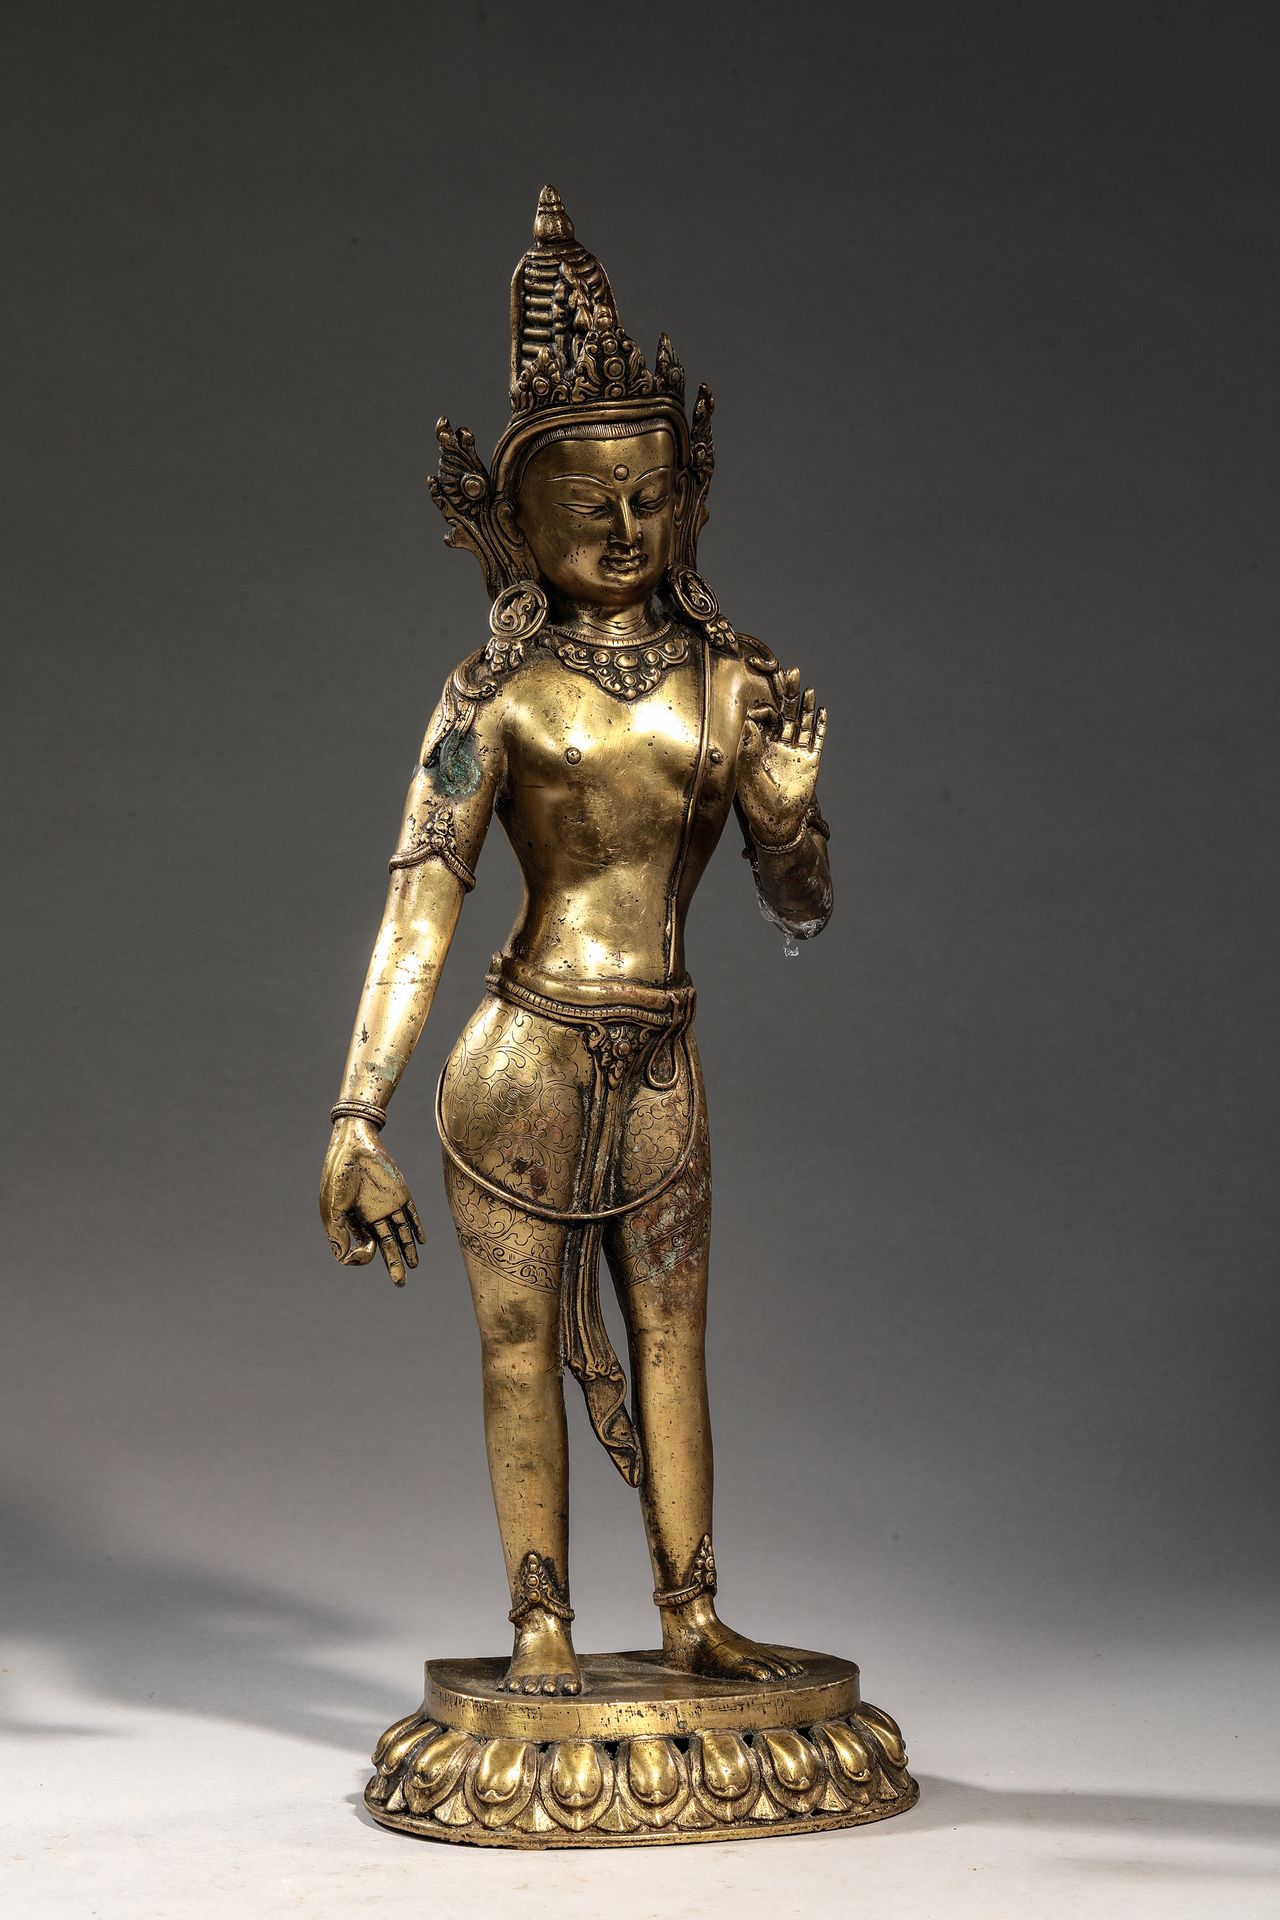 Null AVALOKITESVARA in bronze
Nepal 20th century
H. 43 cm